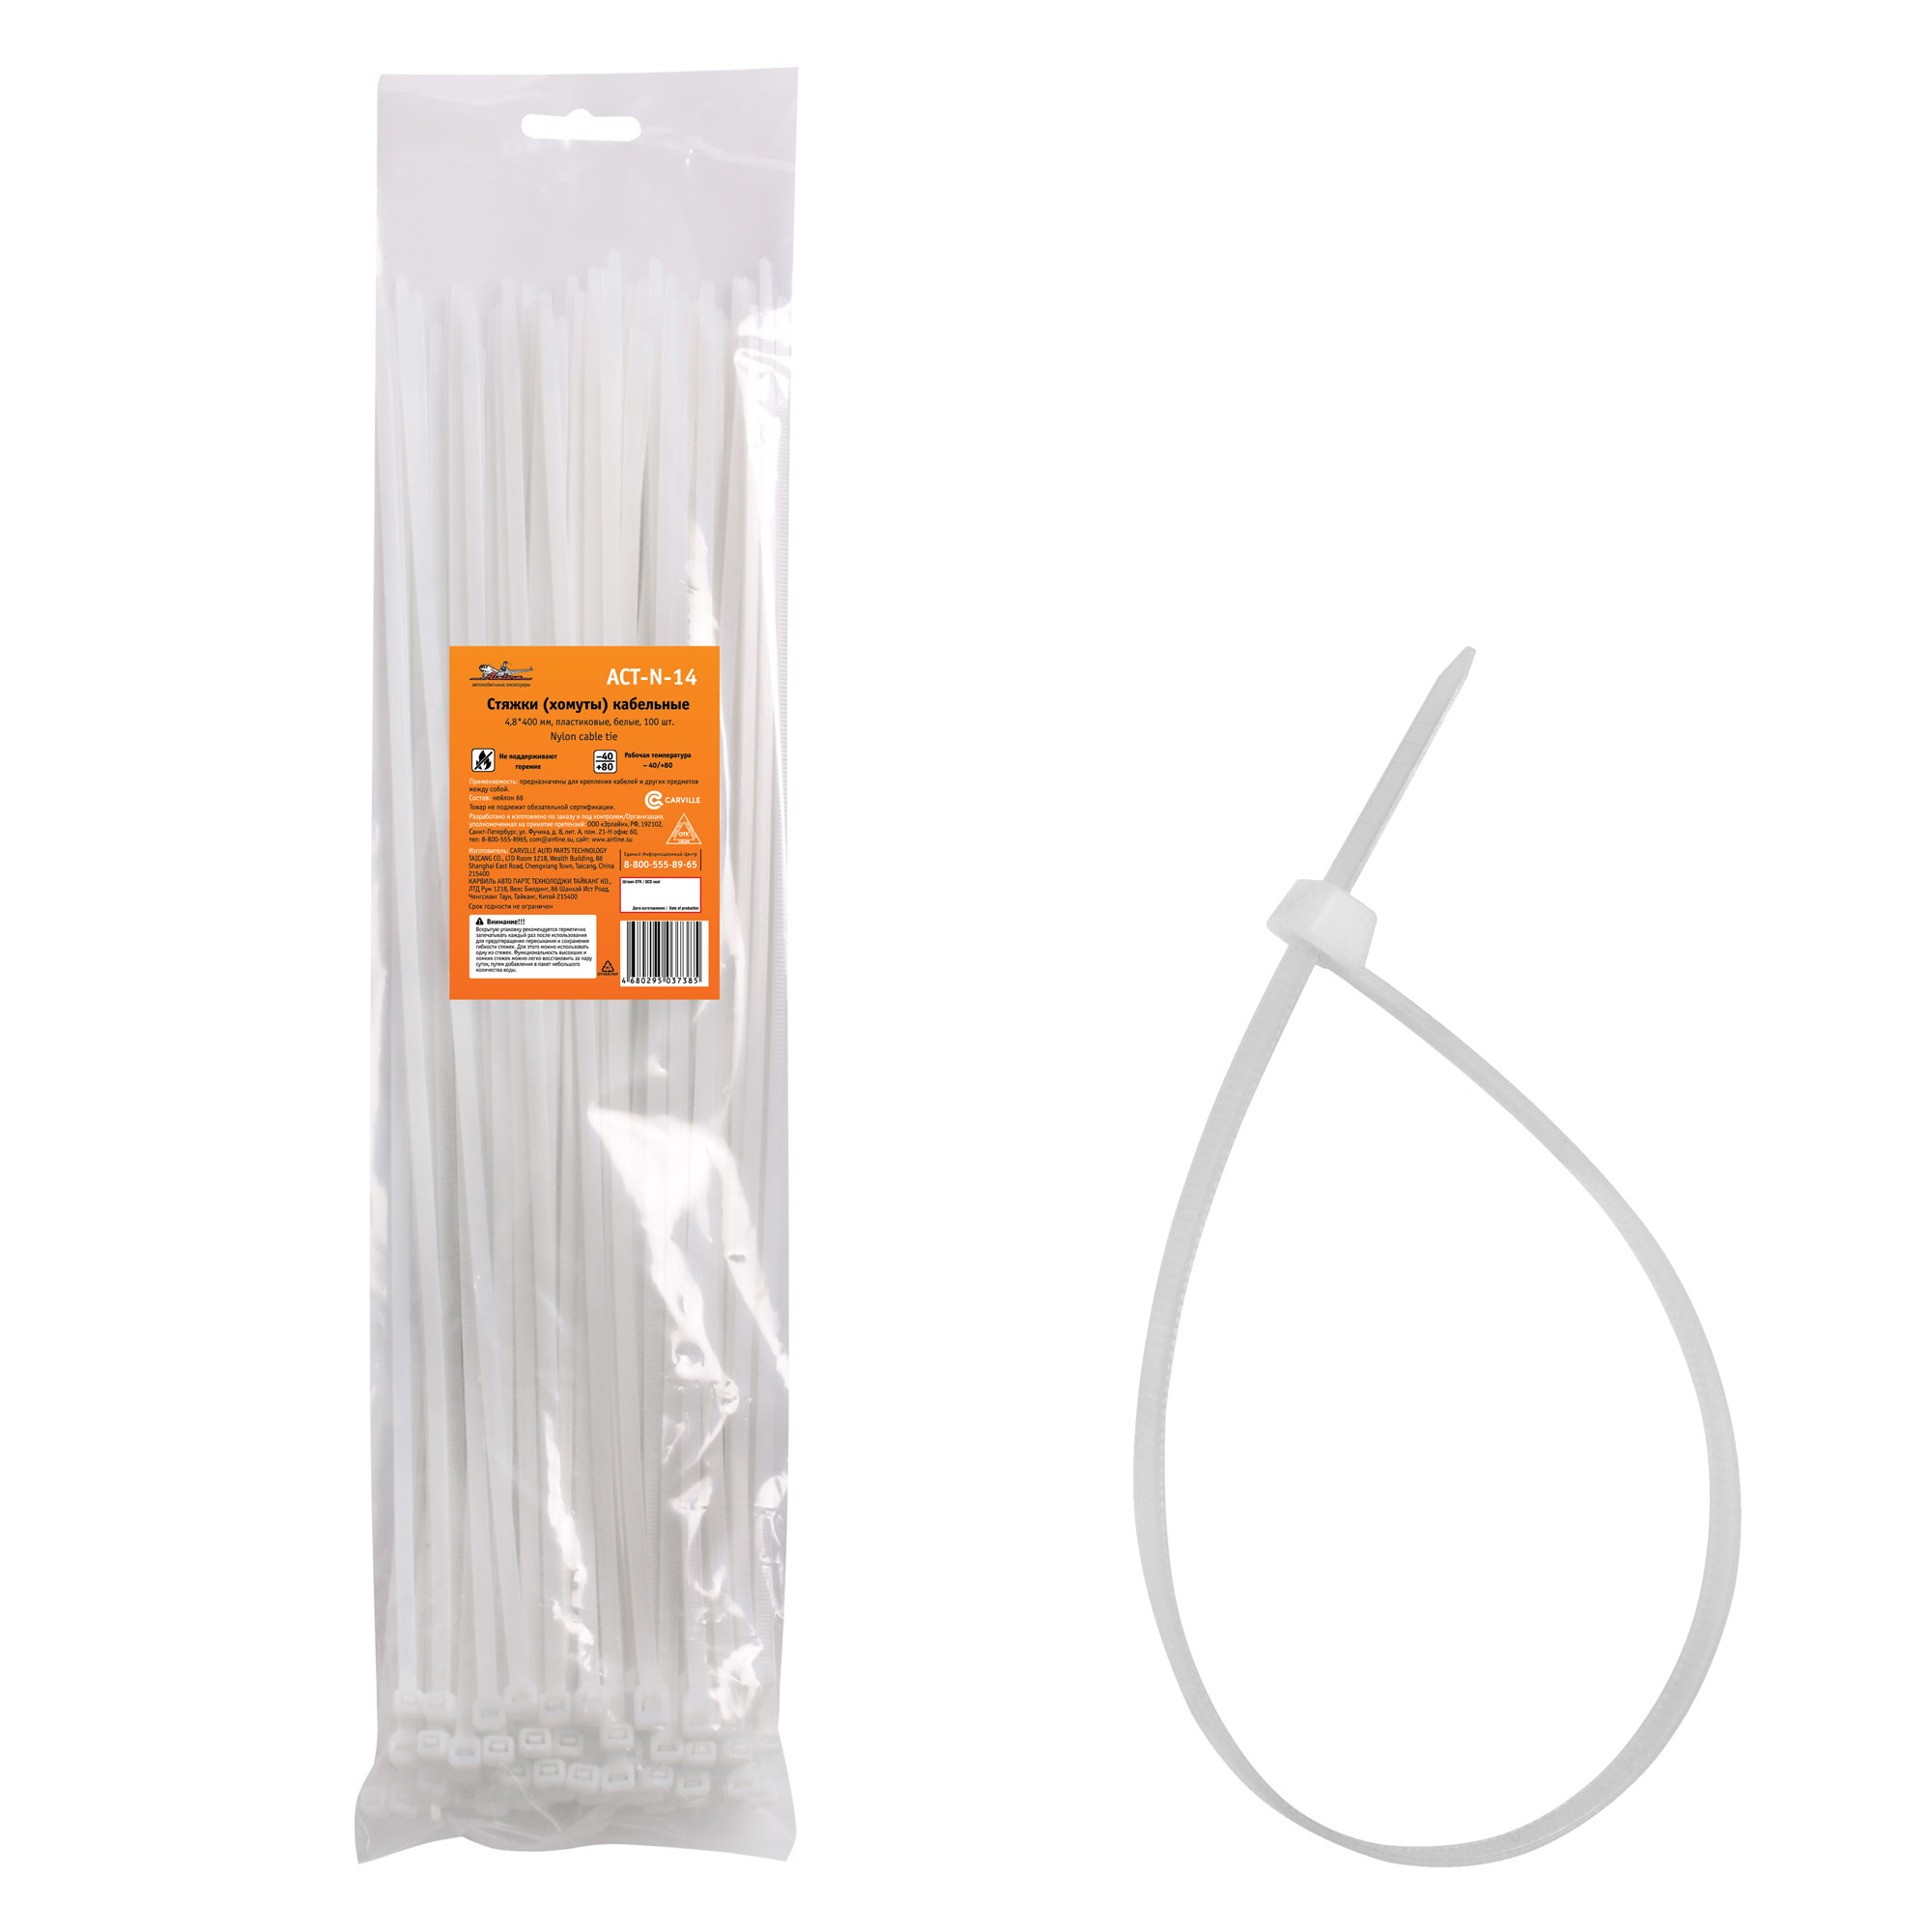 Стяжки (хомуты) кабельные 4,8*400 мм, пластиковые, белые, 100 шт. - AIRLINE ACT-N-14